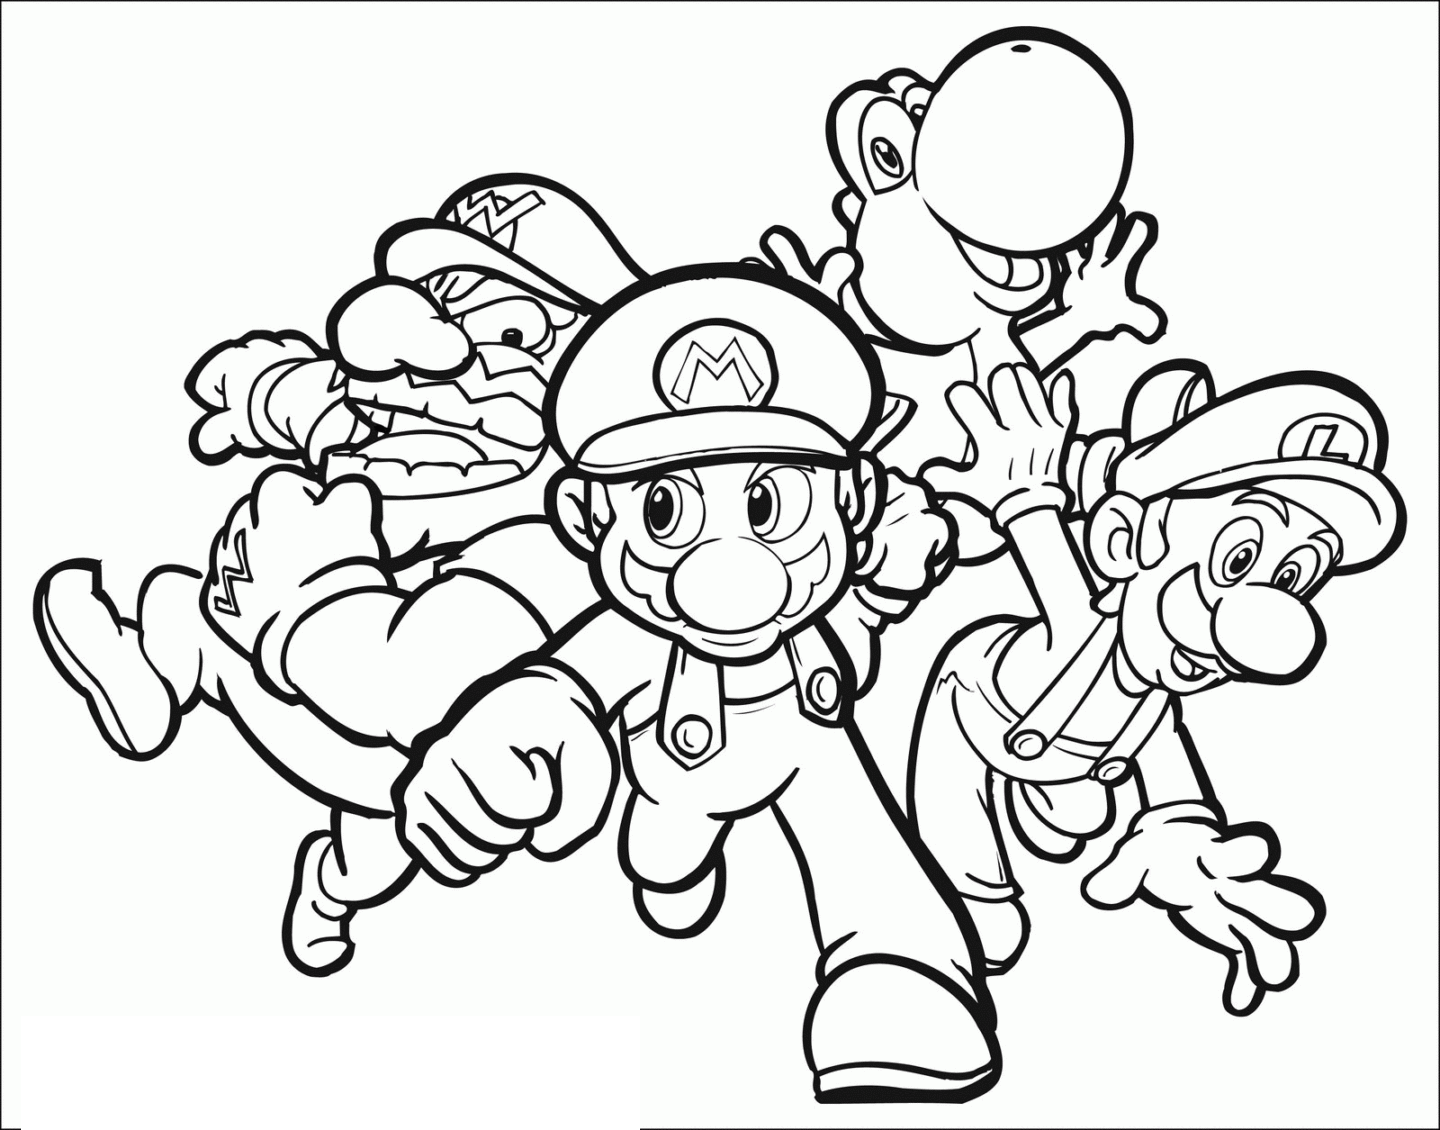 Mario, Luigi, Wario, And Yoshi